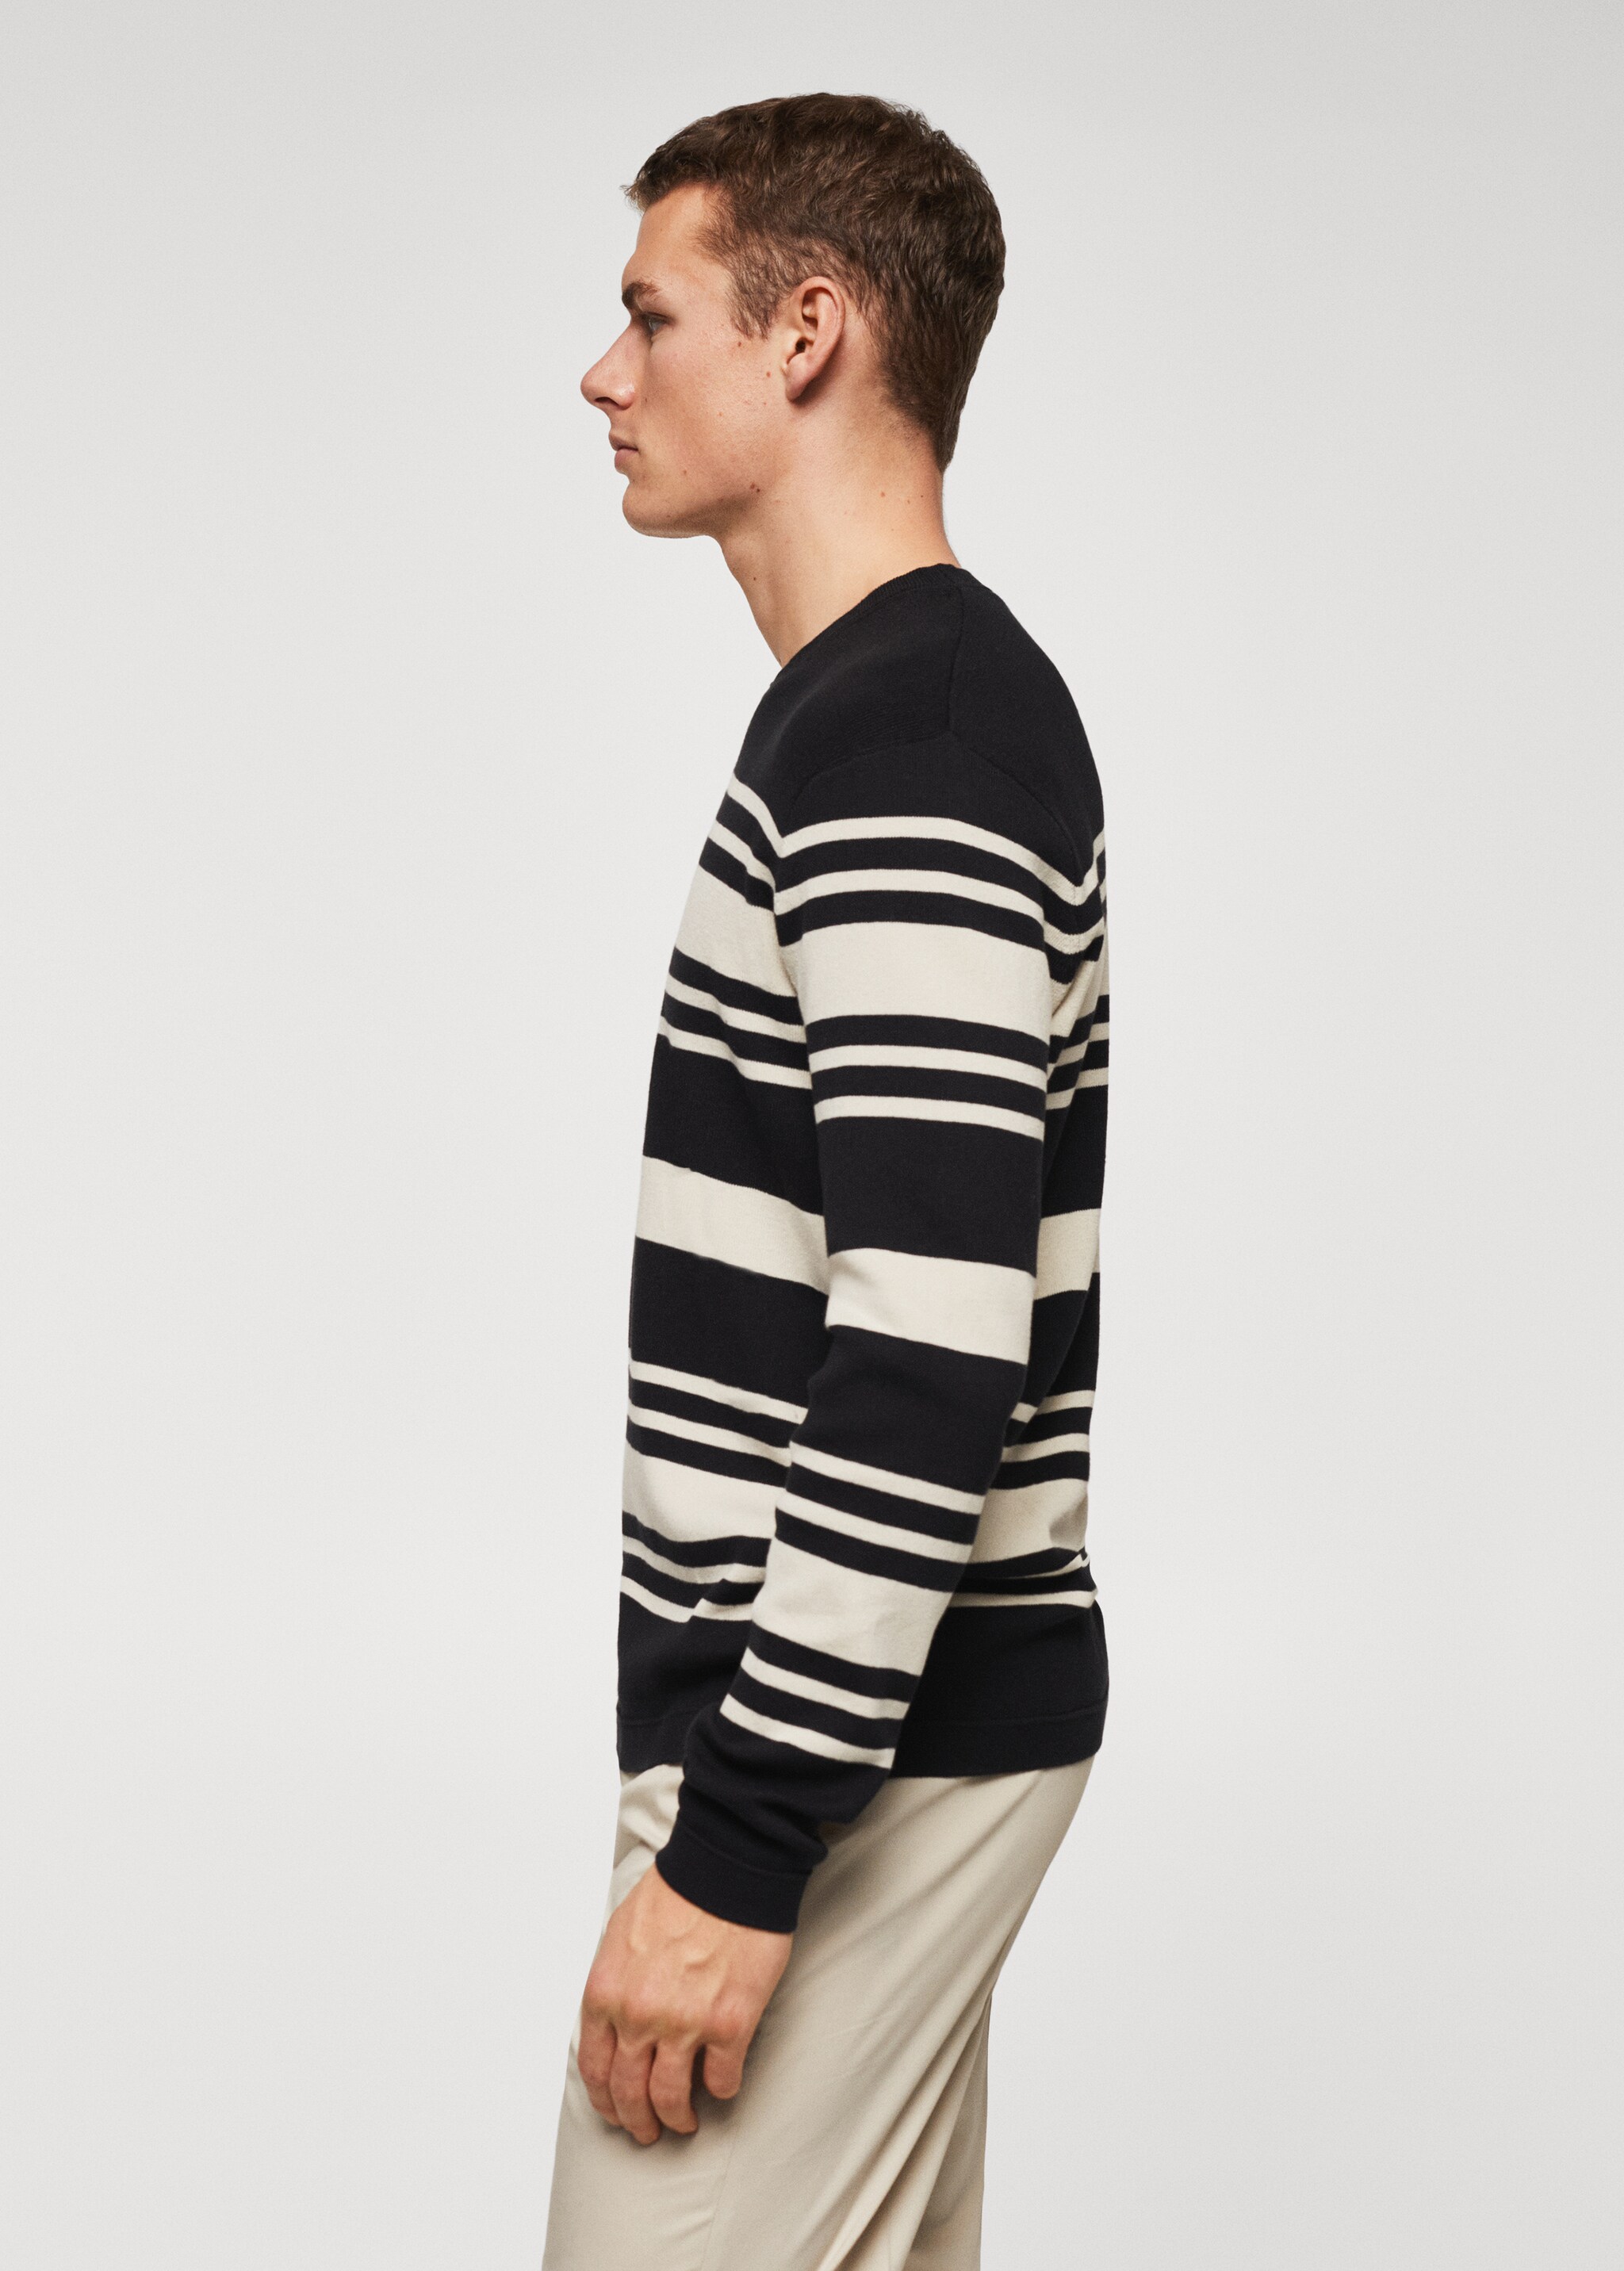 Striped cotton sweater - Detaliu al articolului 6